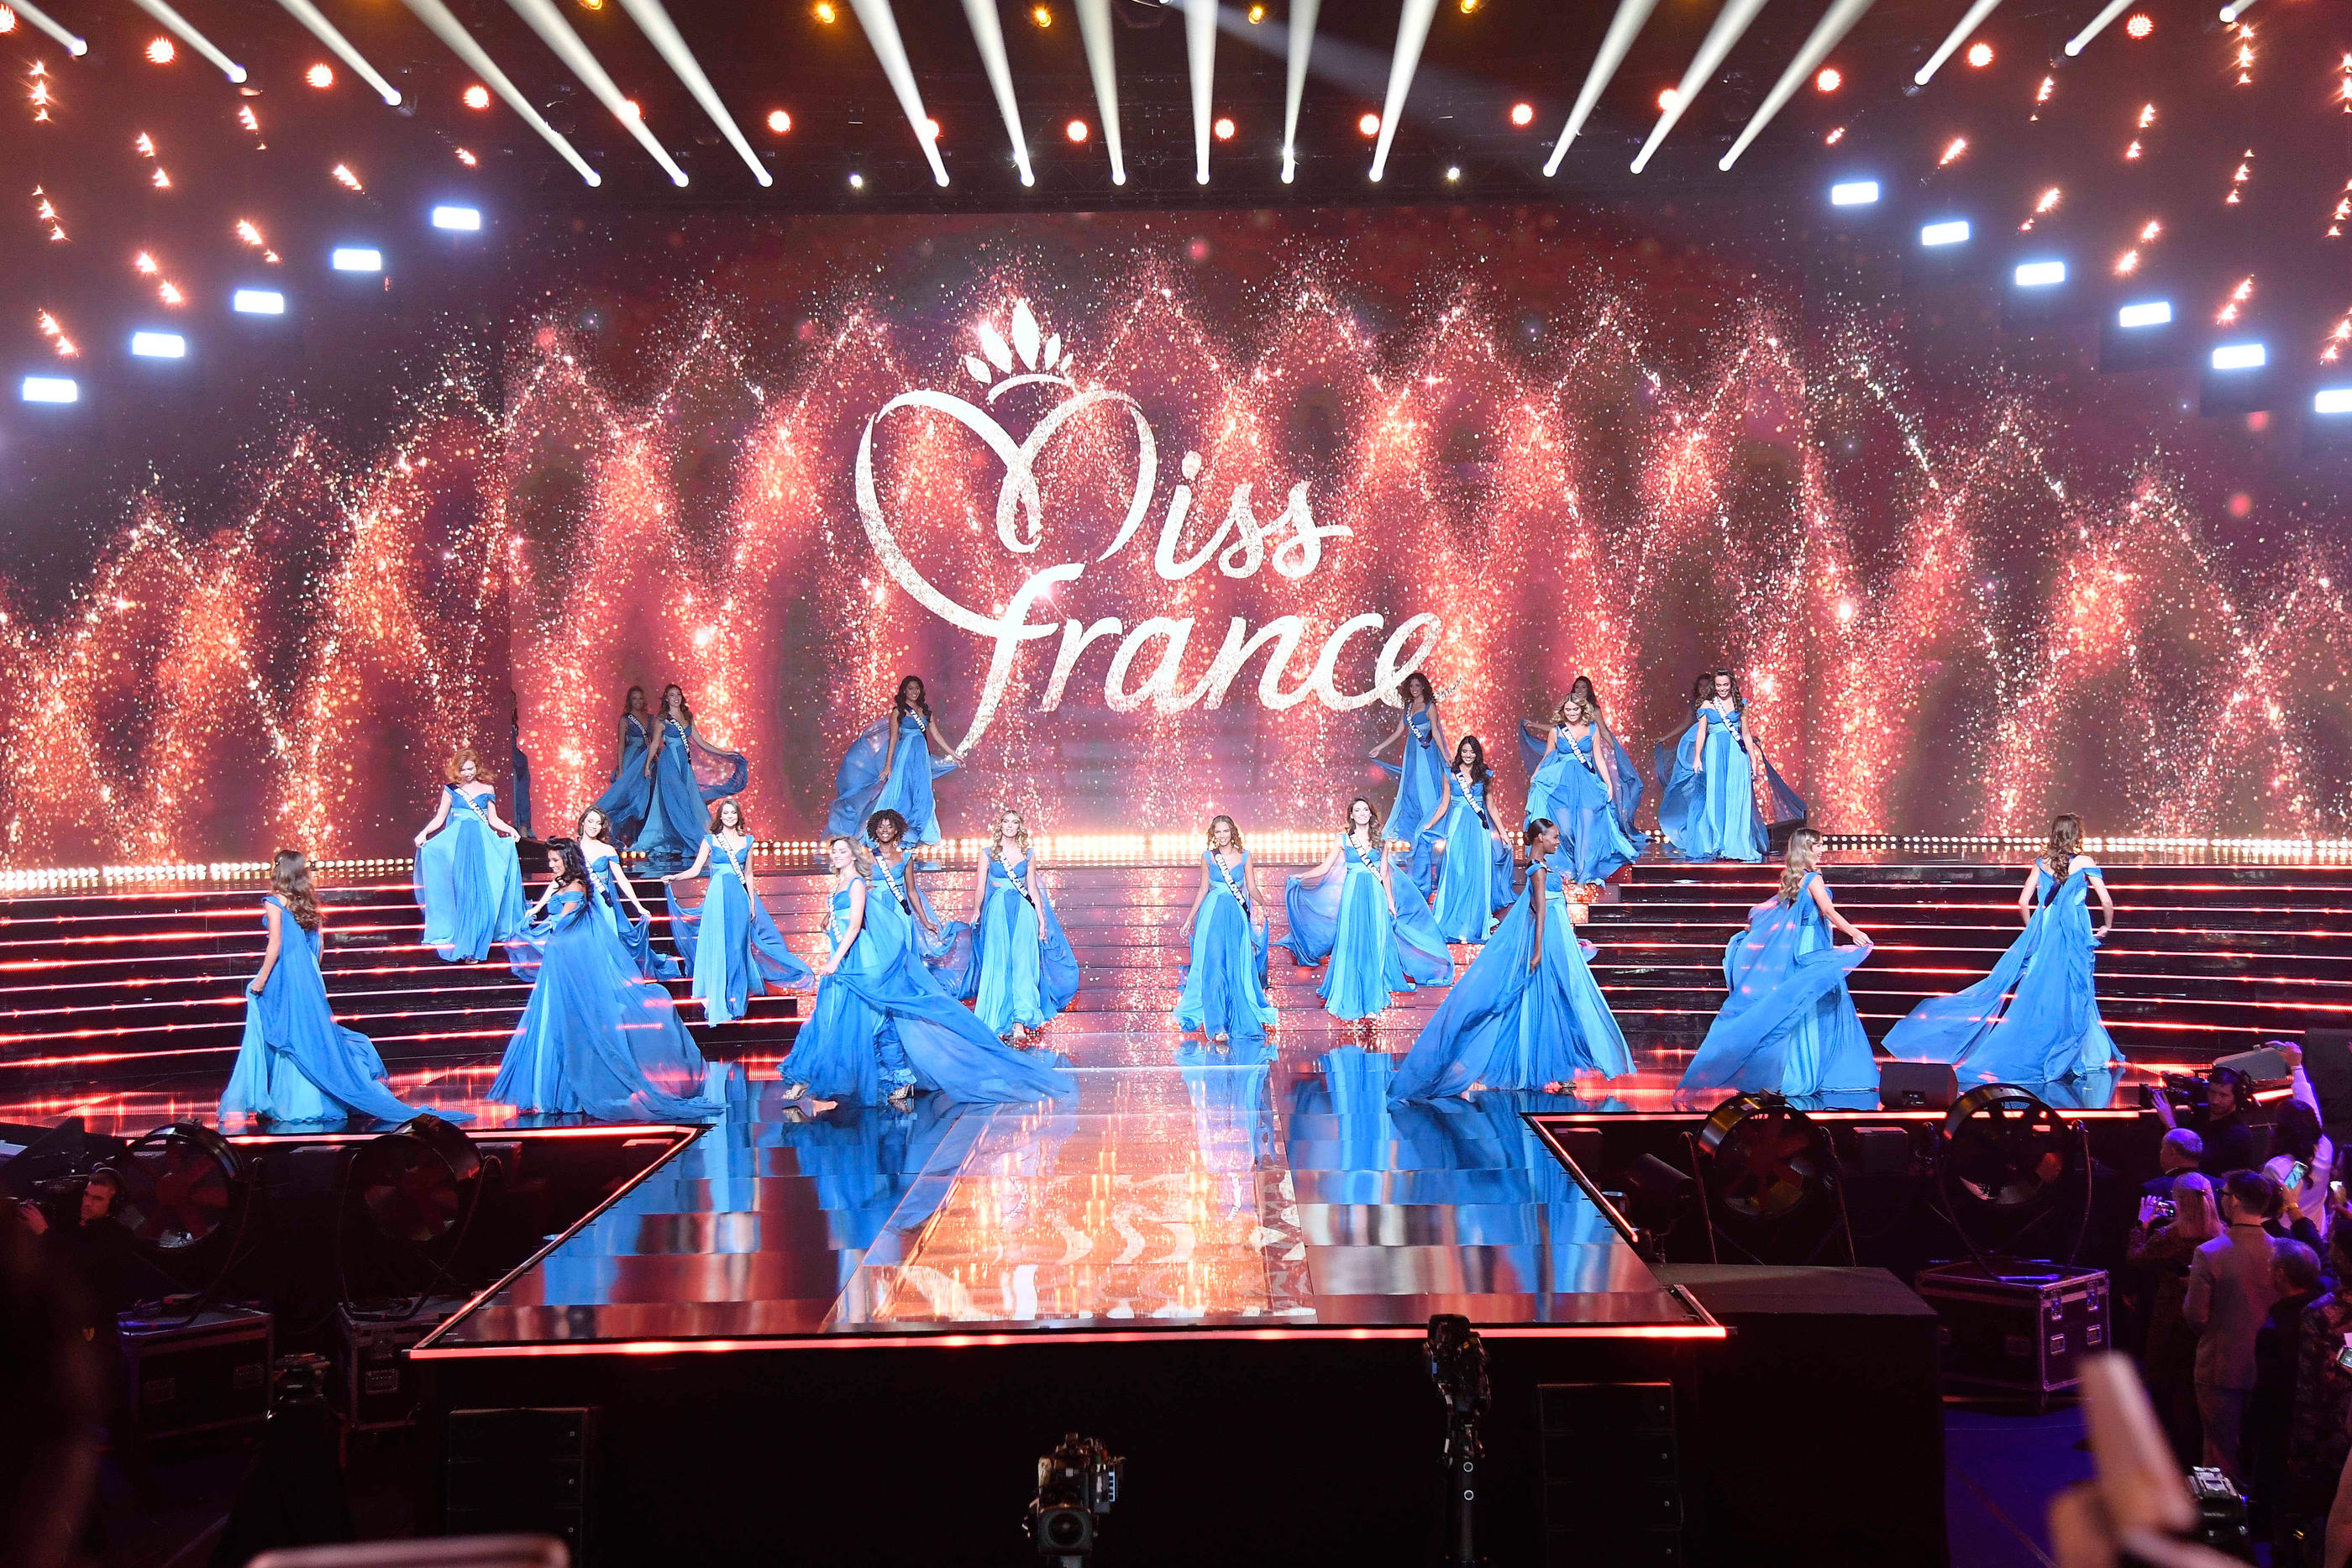 Trente candidates se disputeront le titre de Miss France le 16 décembre prochain, à Dijon. Sélection Icono/ Pierre Villard